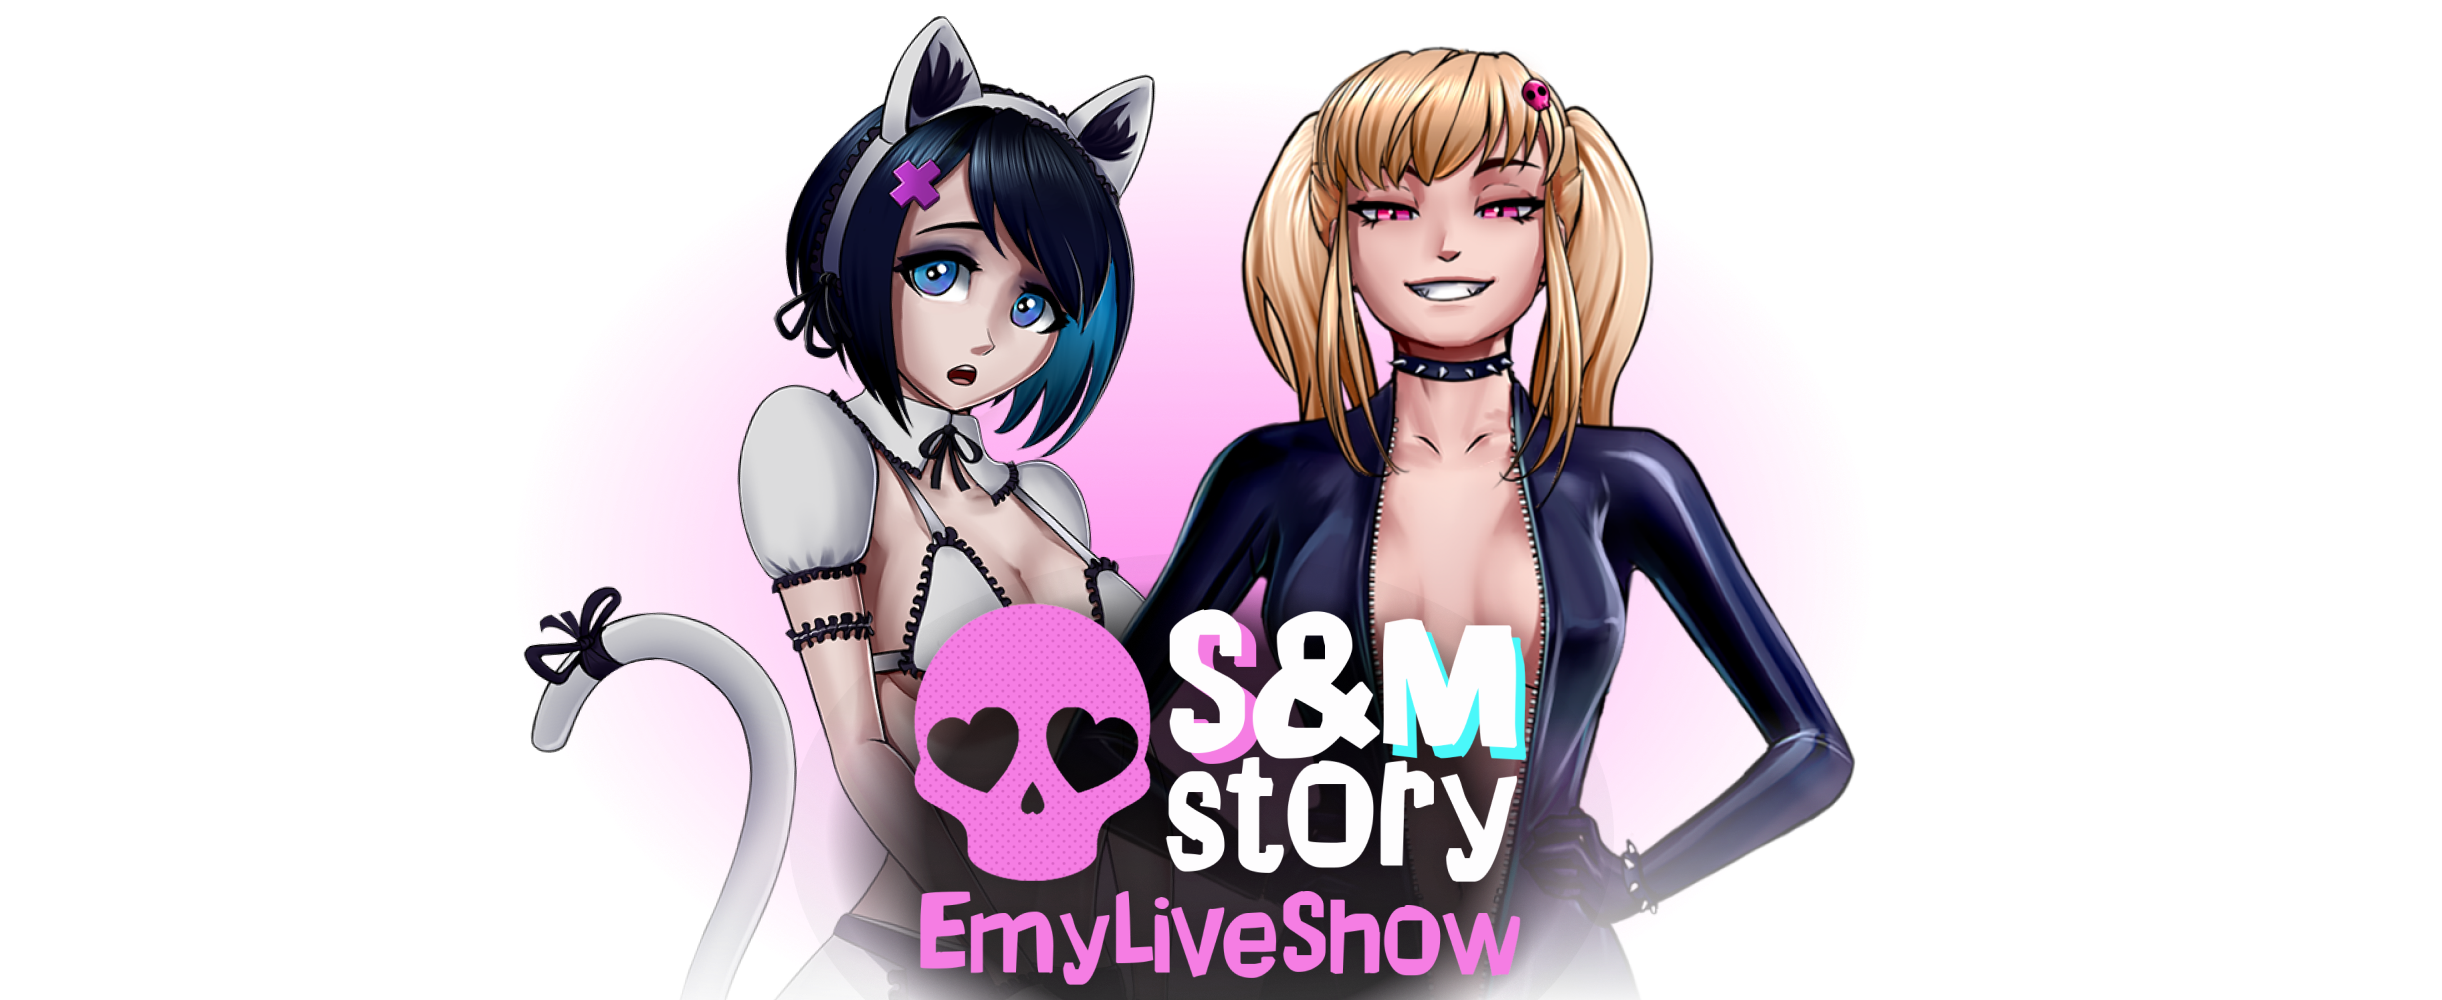 EmyLiveShow: S&M story